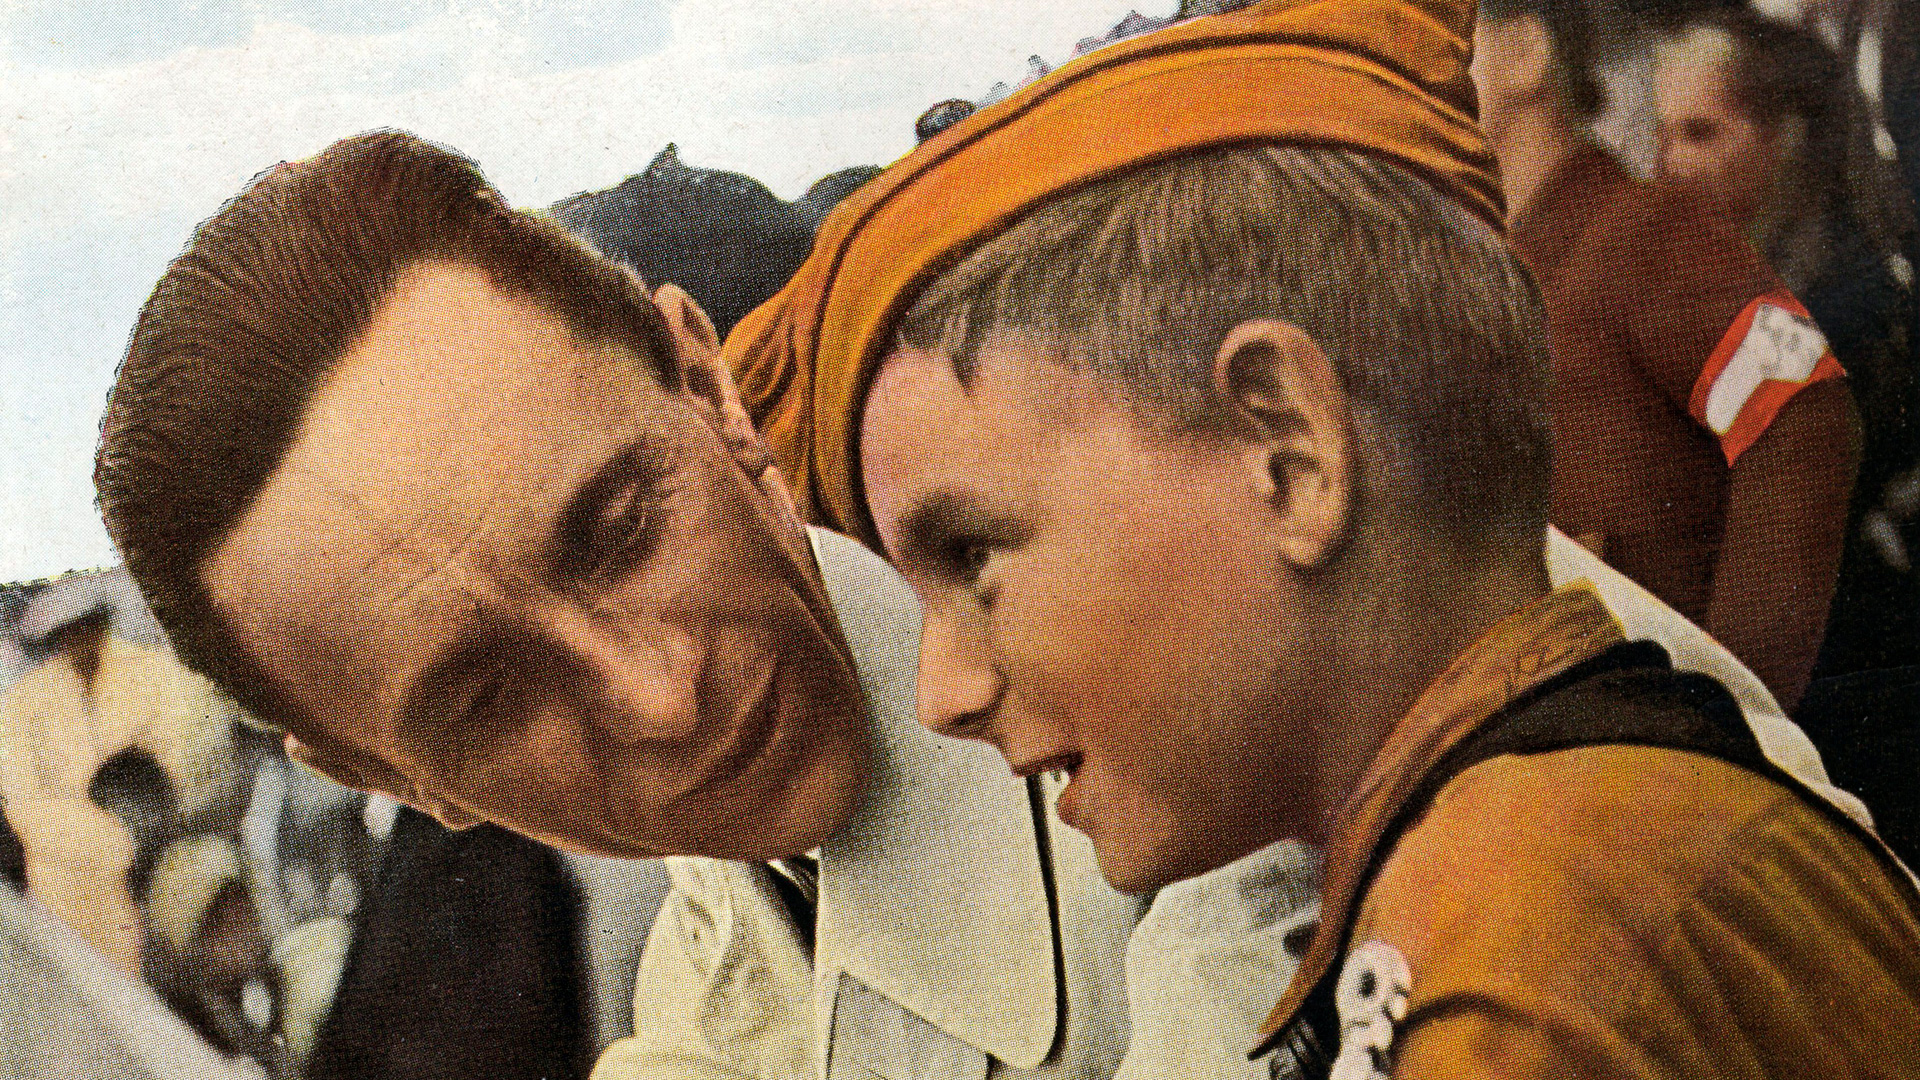 Joseph Goebbels con un niño miembro de la juventud hitleriana (Shutterstock)
